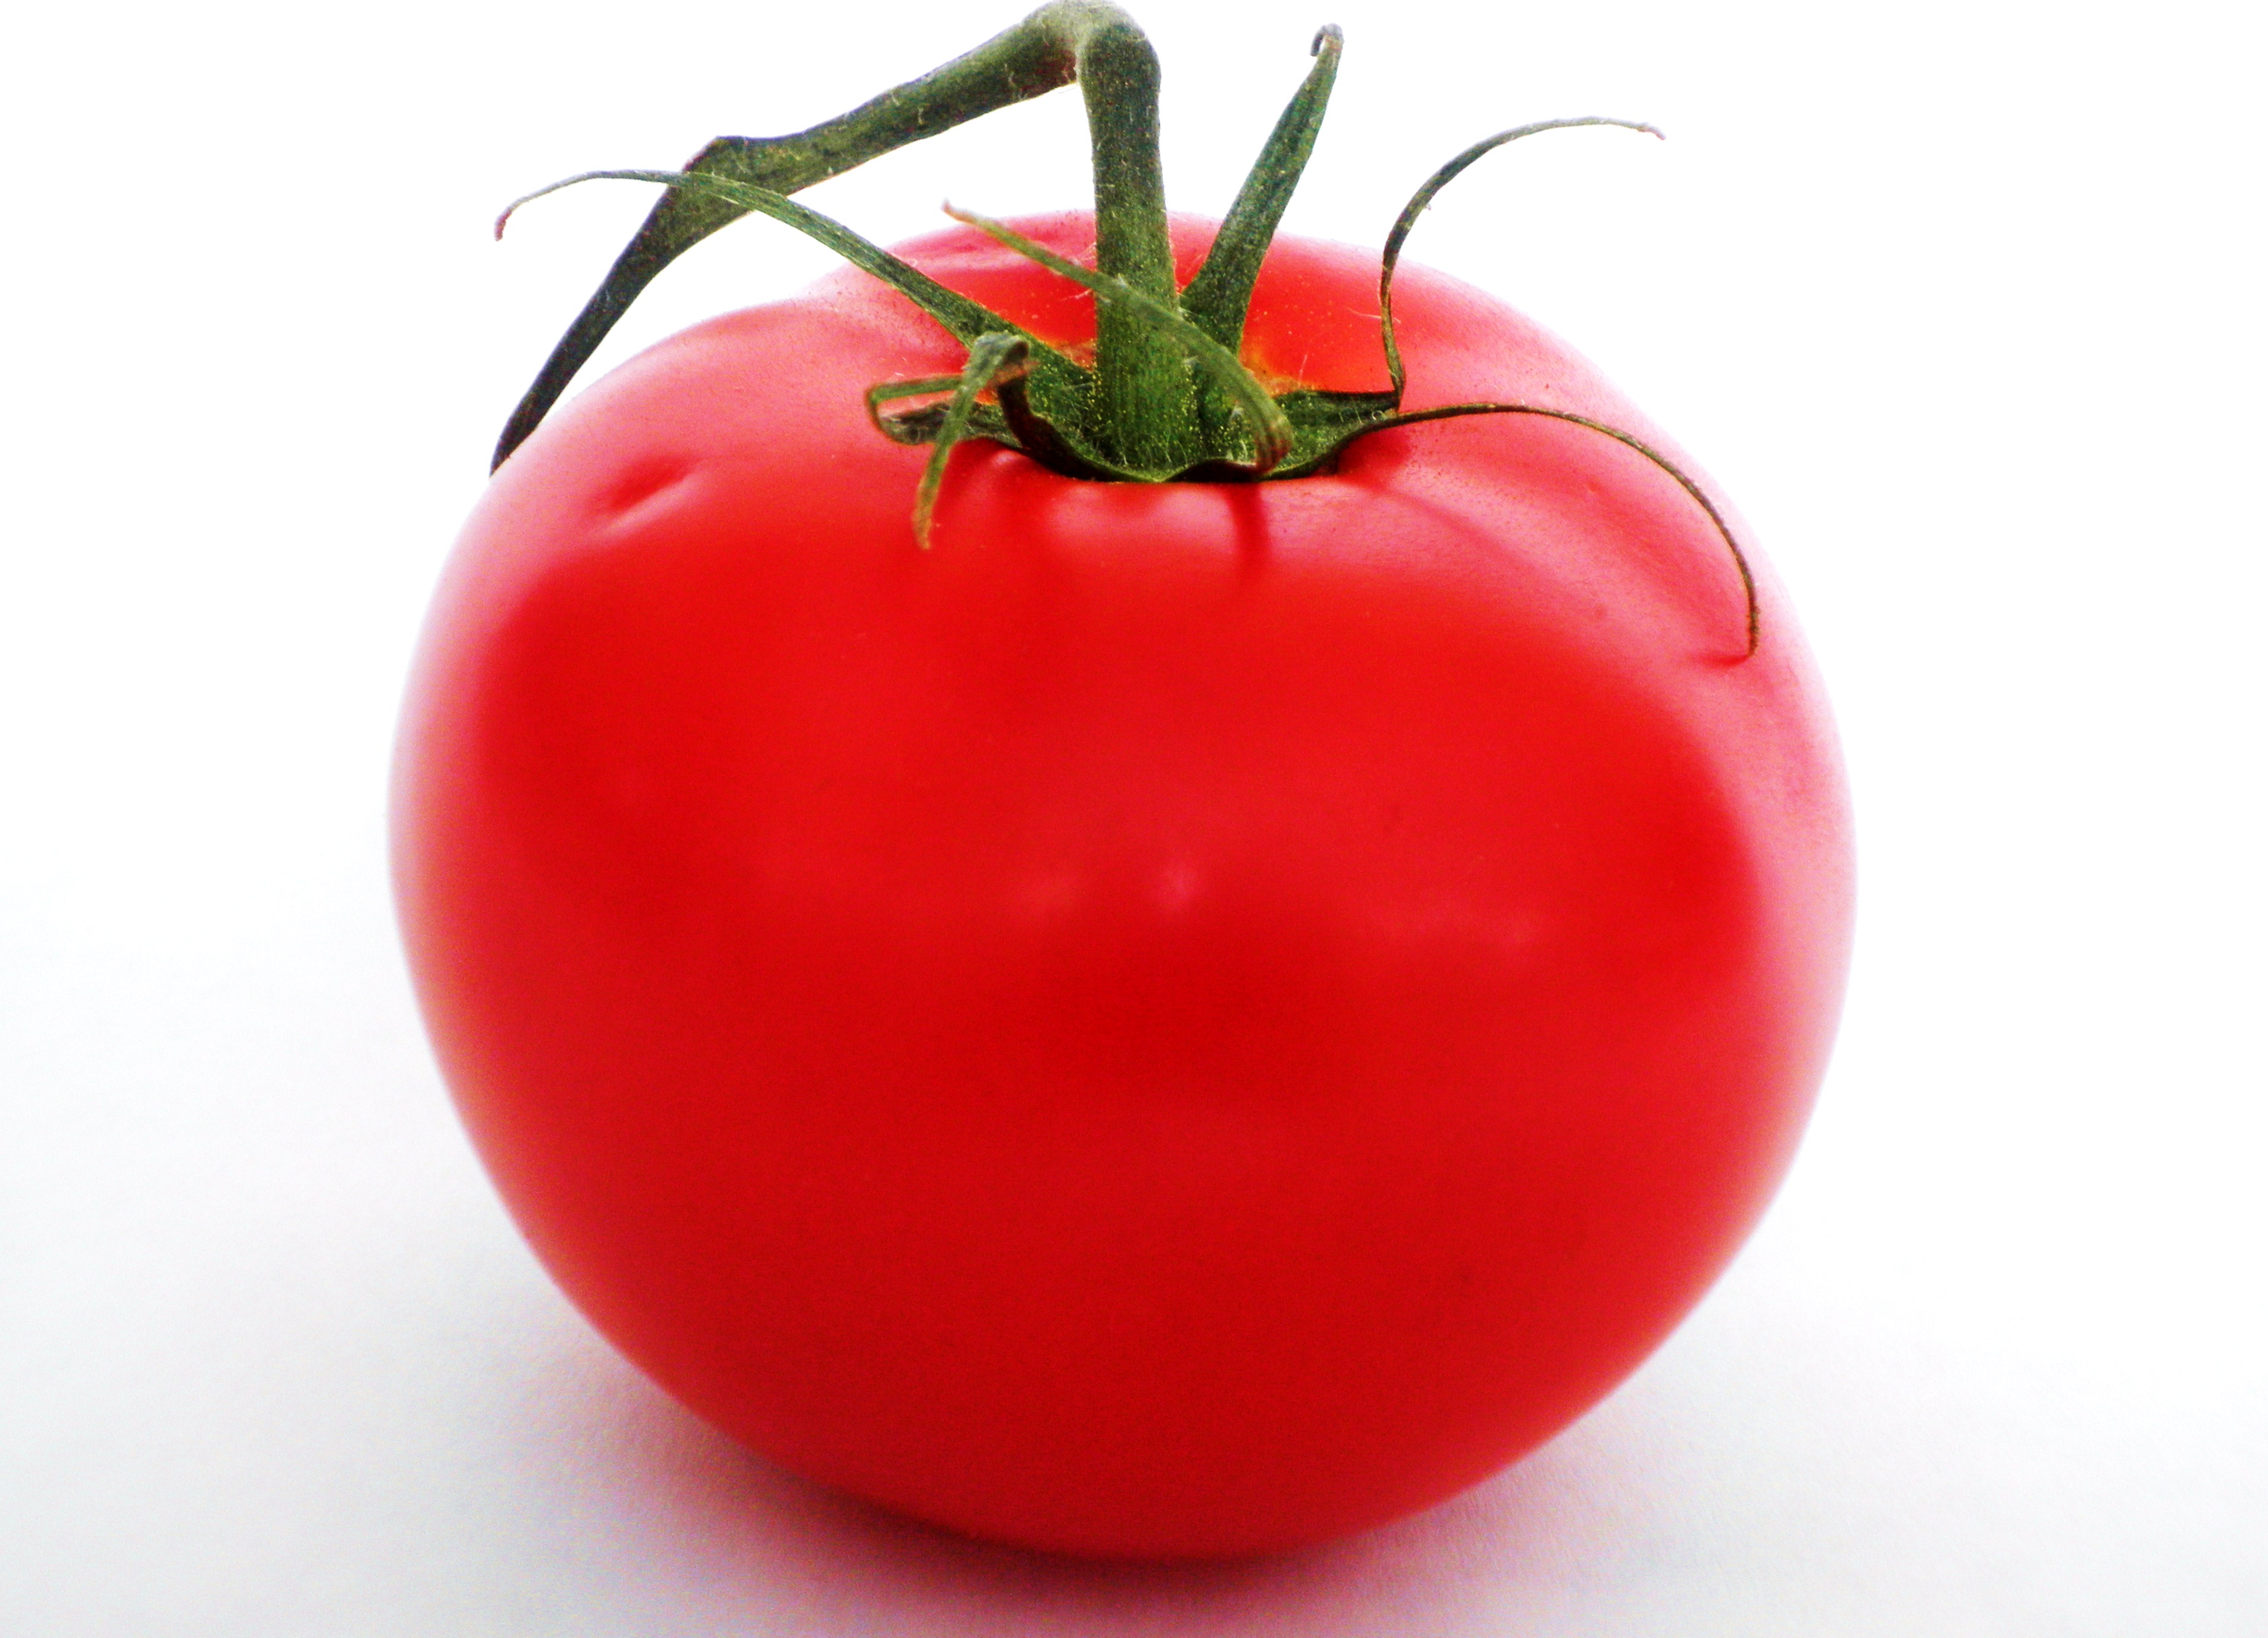 5-May-and-tomato-0141.jpg